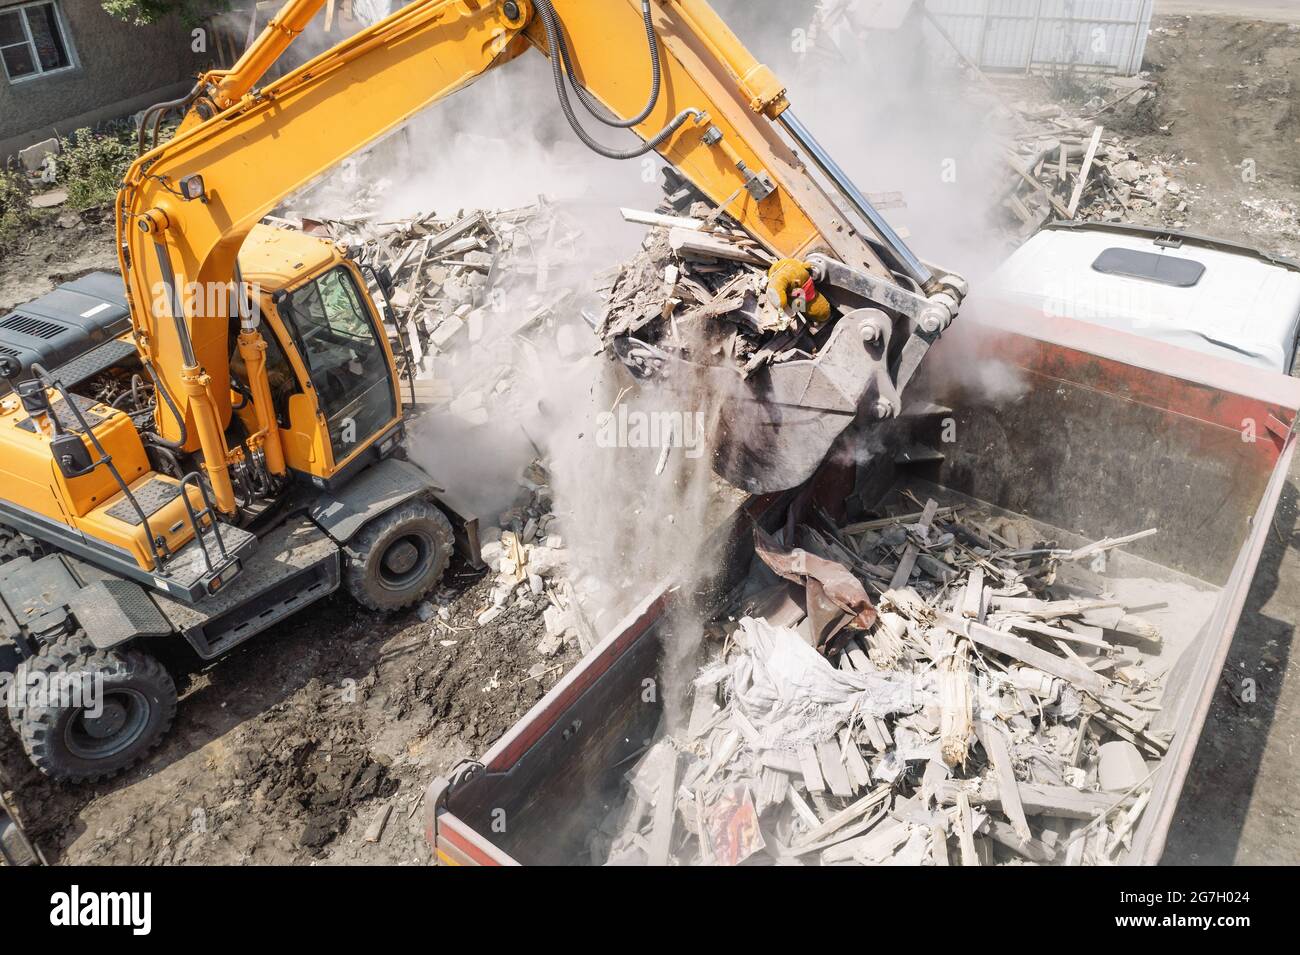 La pelle hydraulique charge les débris de construction de l'ancien bâtiment après leur destruction dans un camion-benne, vue aérienne depuis un drone. Banque D'Images